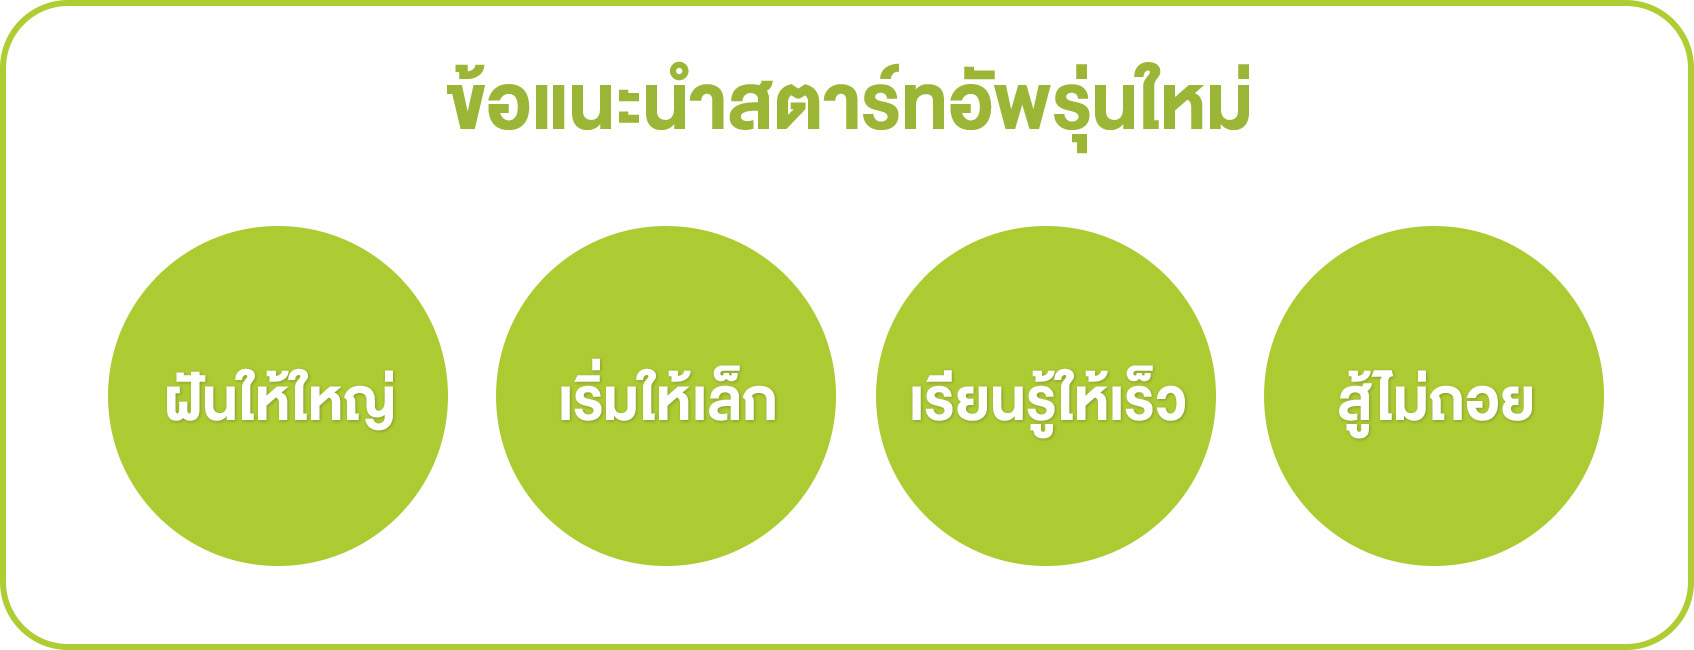 ข้อแนะนำสตาร์ทอัพรุ่นใหม่ - Startup Thailand